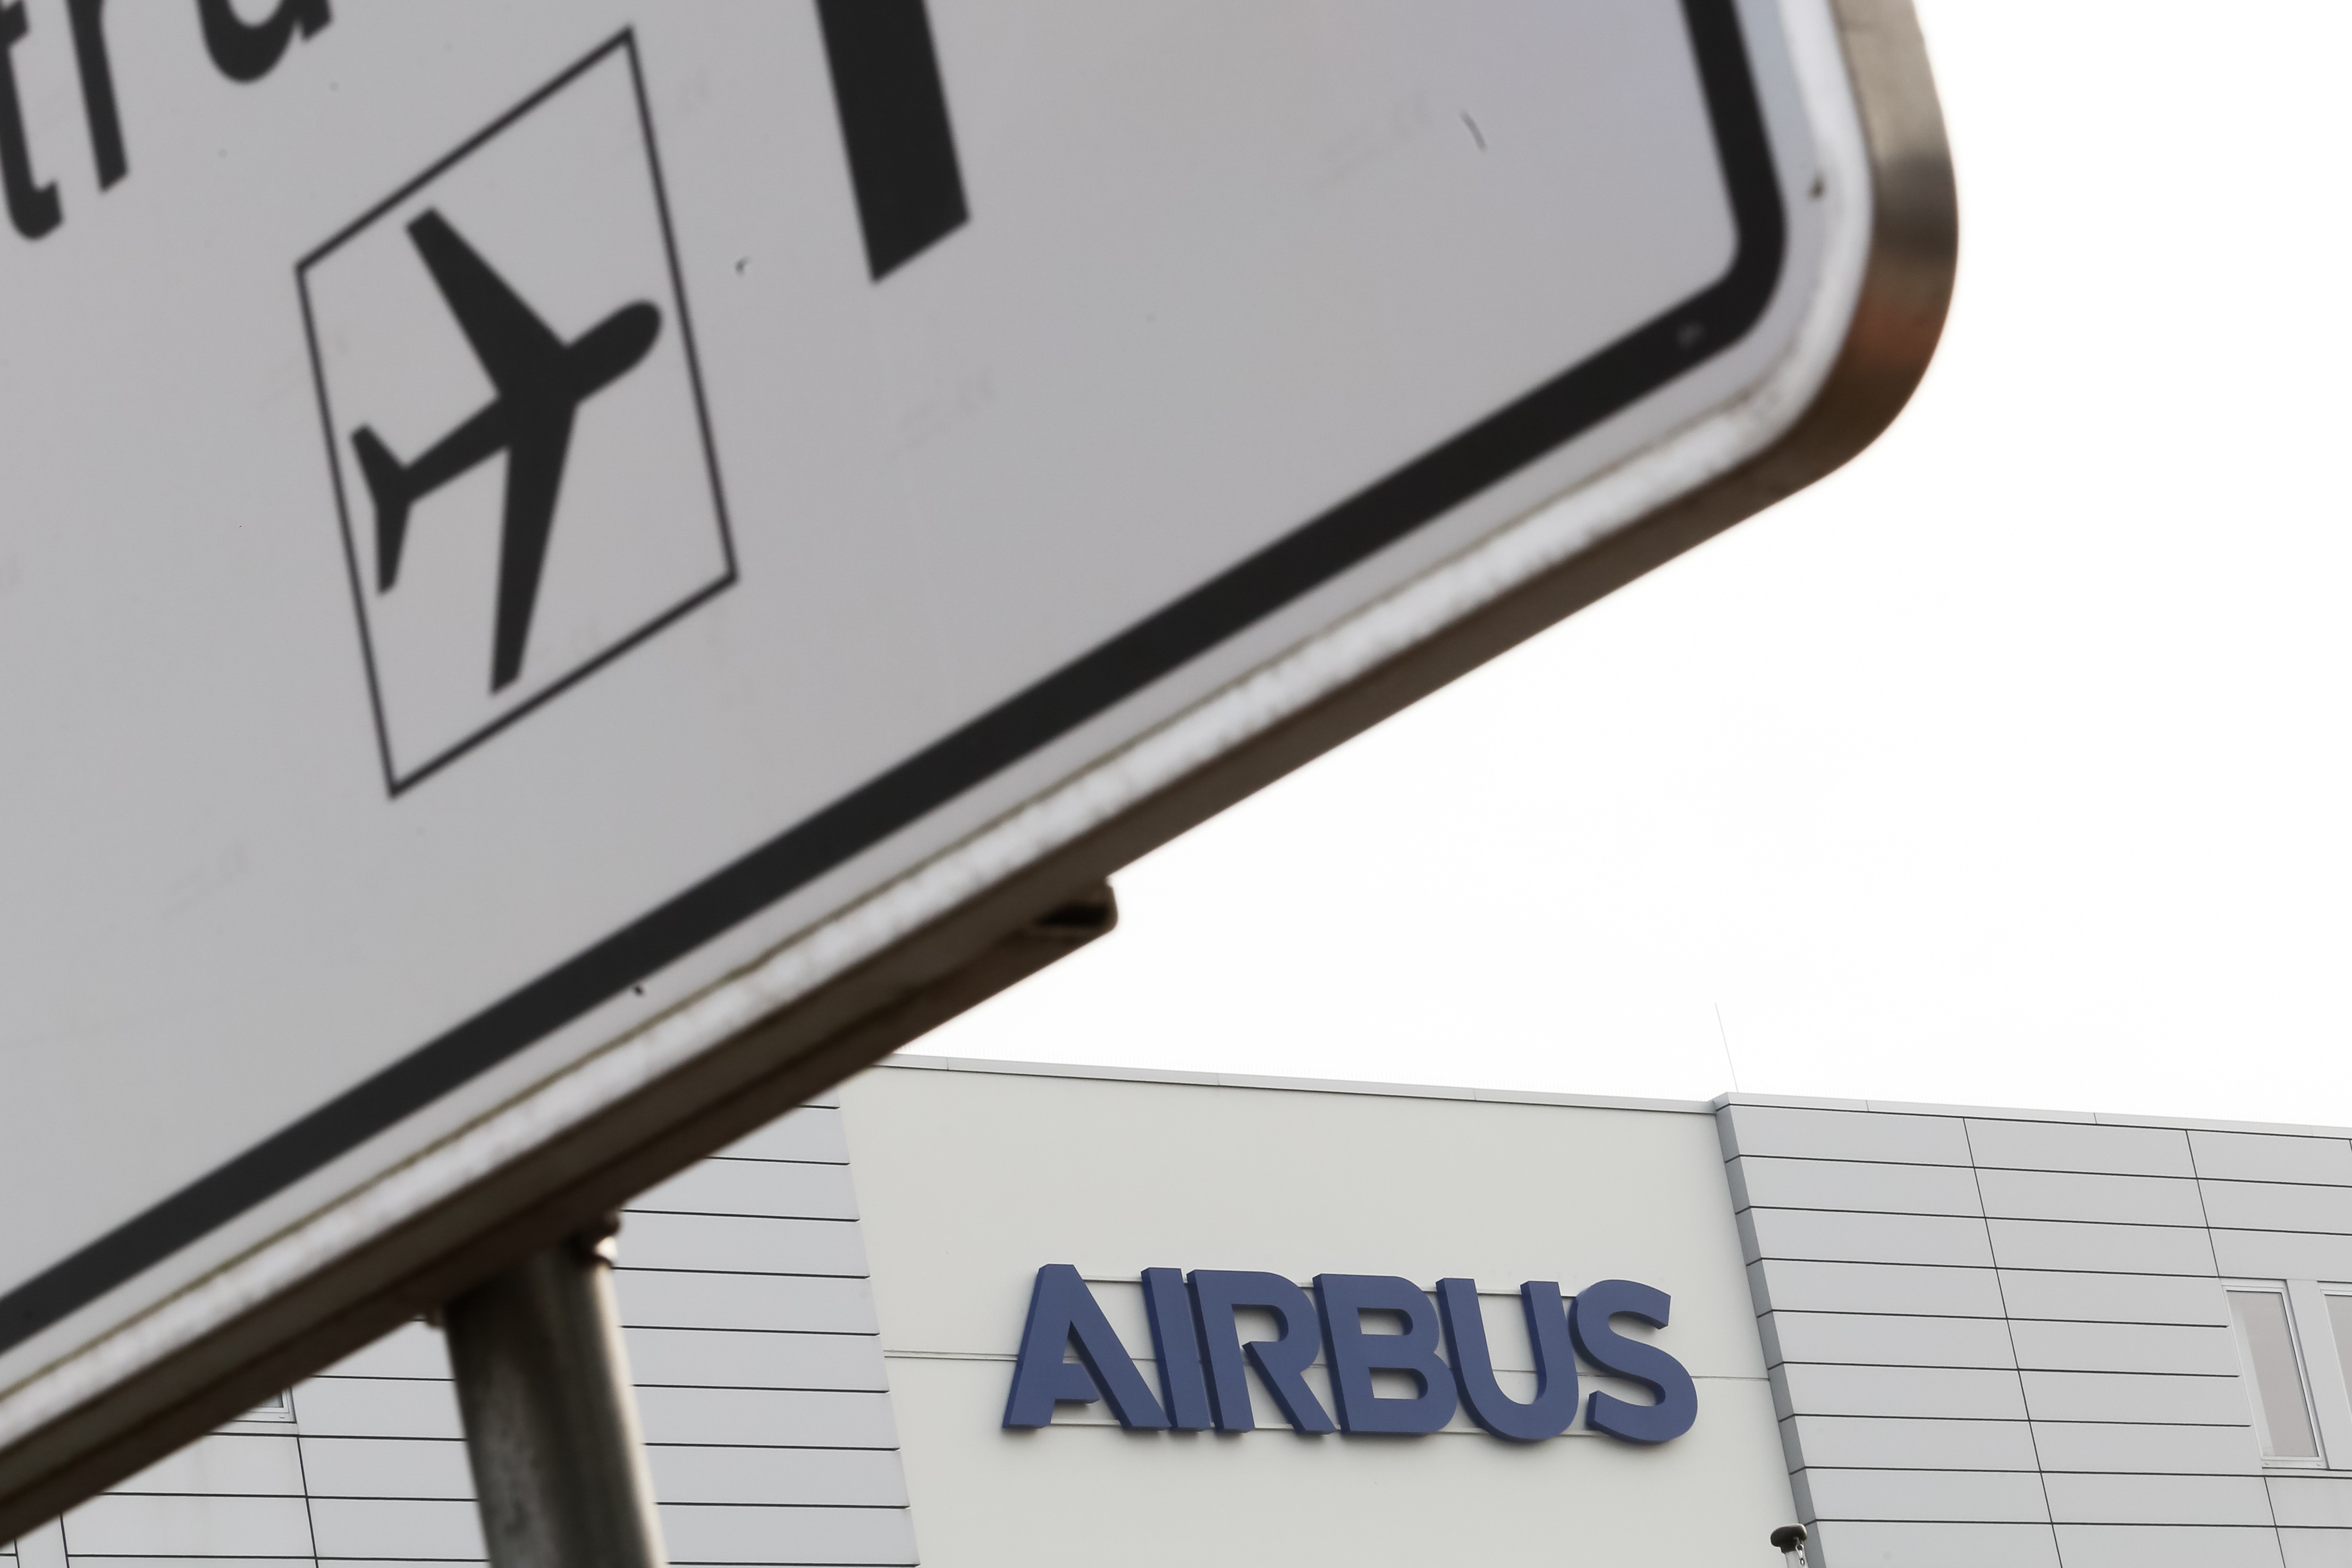 La Audiencia sentencia que Airbus vulneró la libertad sindical al cambiar turnos de trabajo sin negociar